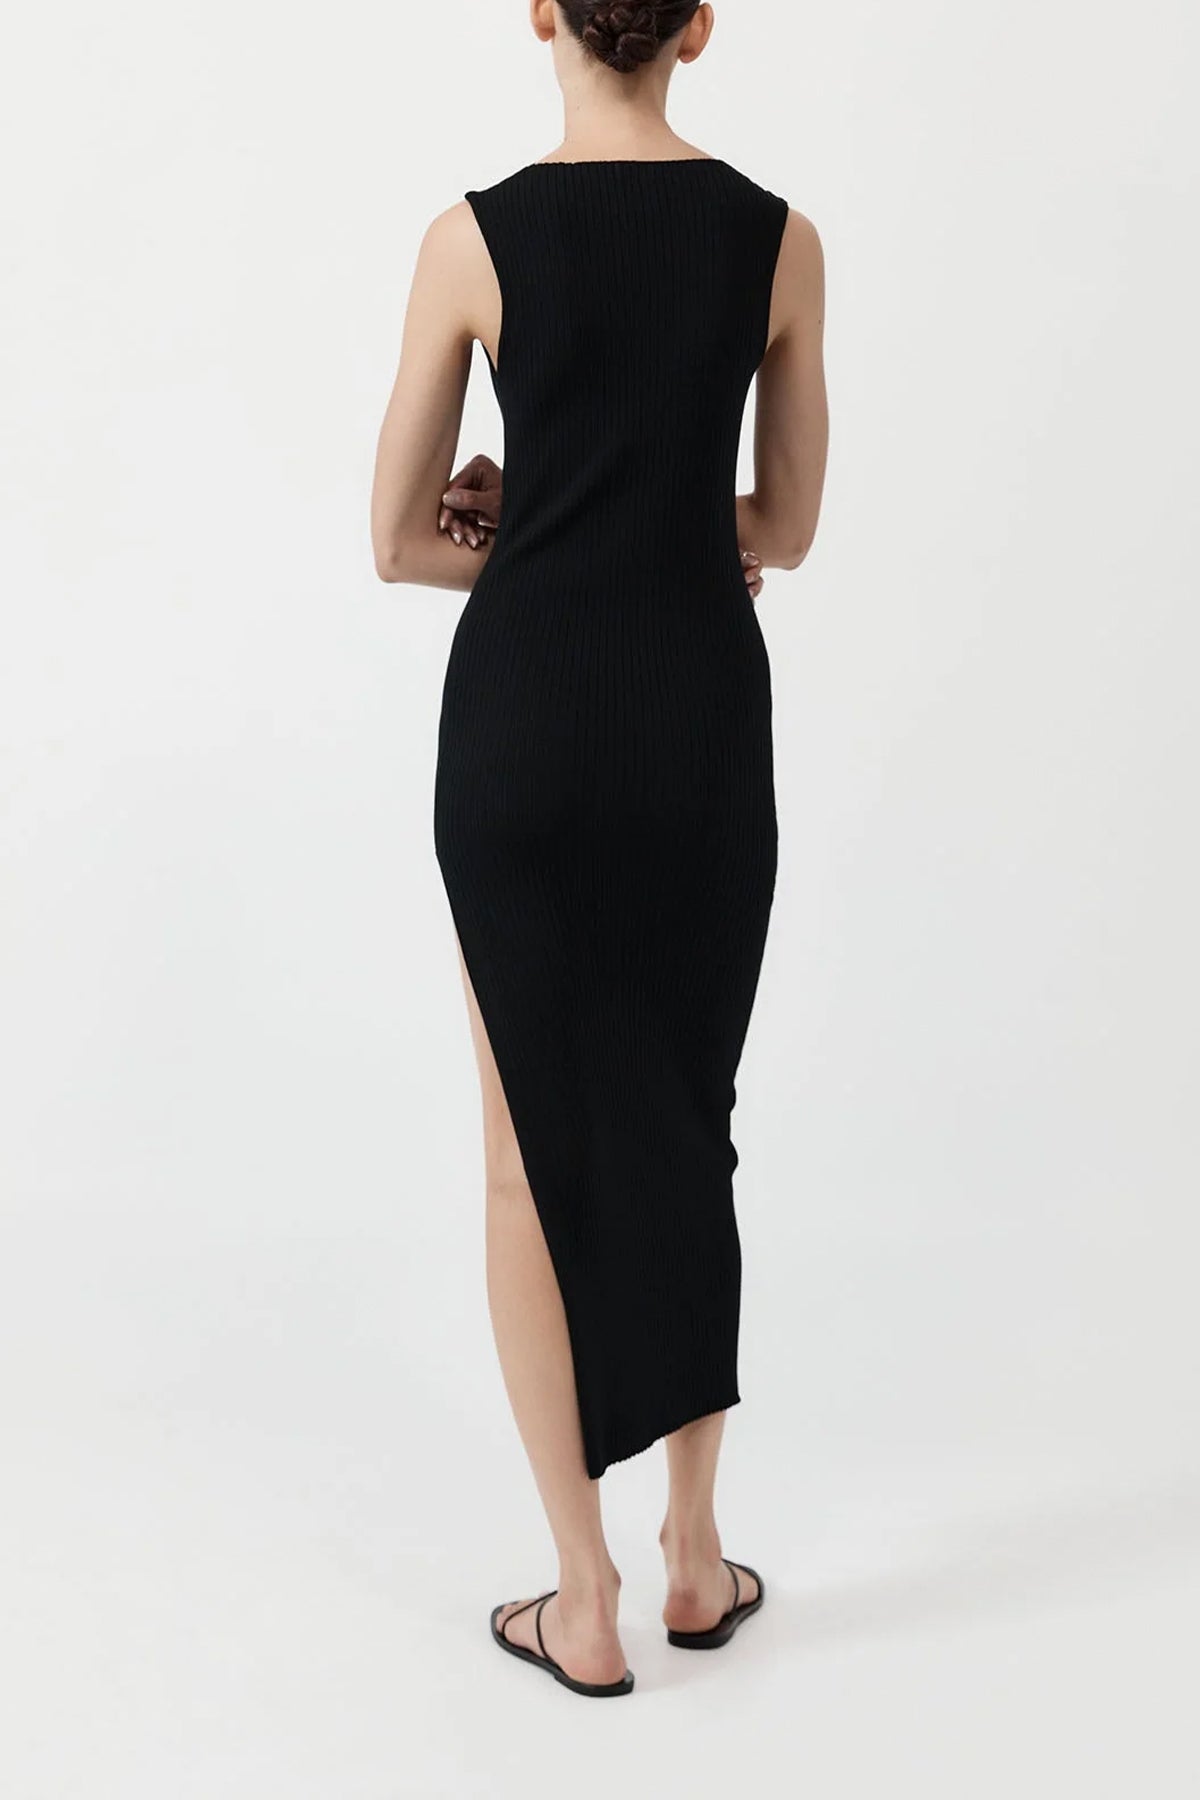 Cut Away Knit Dress in Black - shop-olivia.com